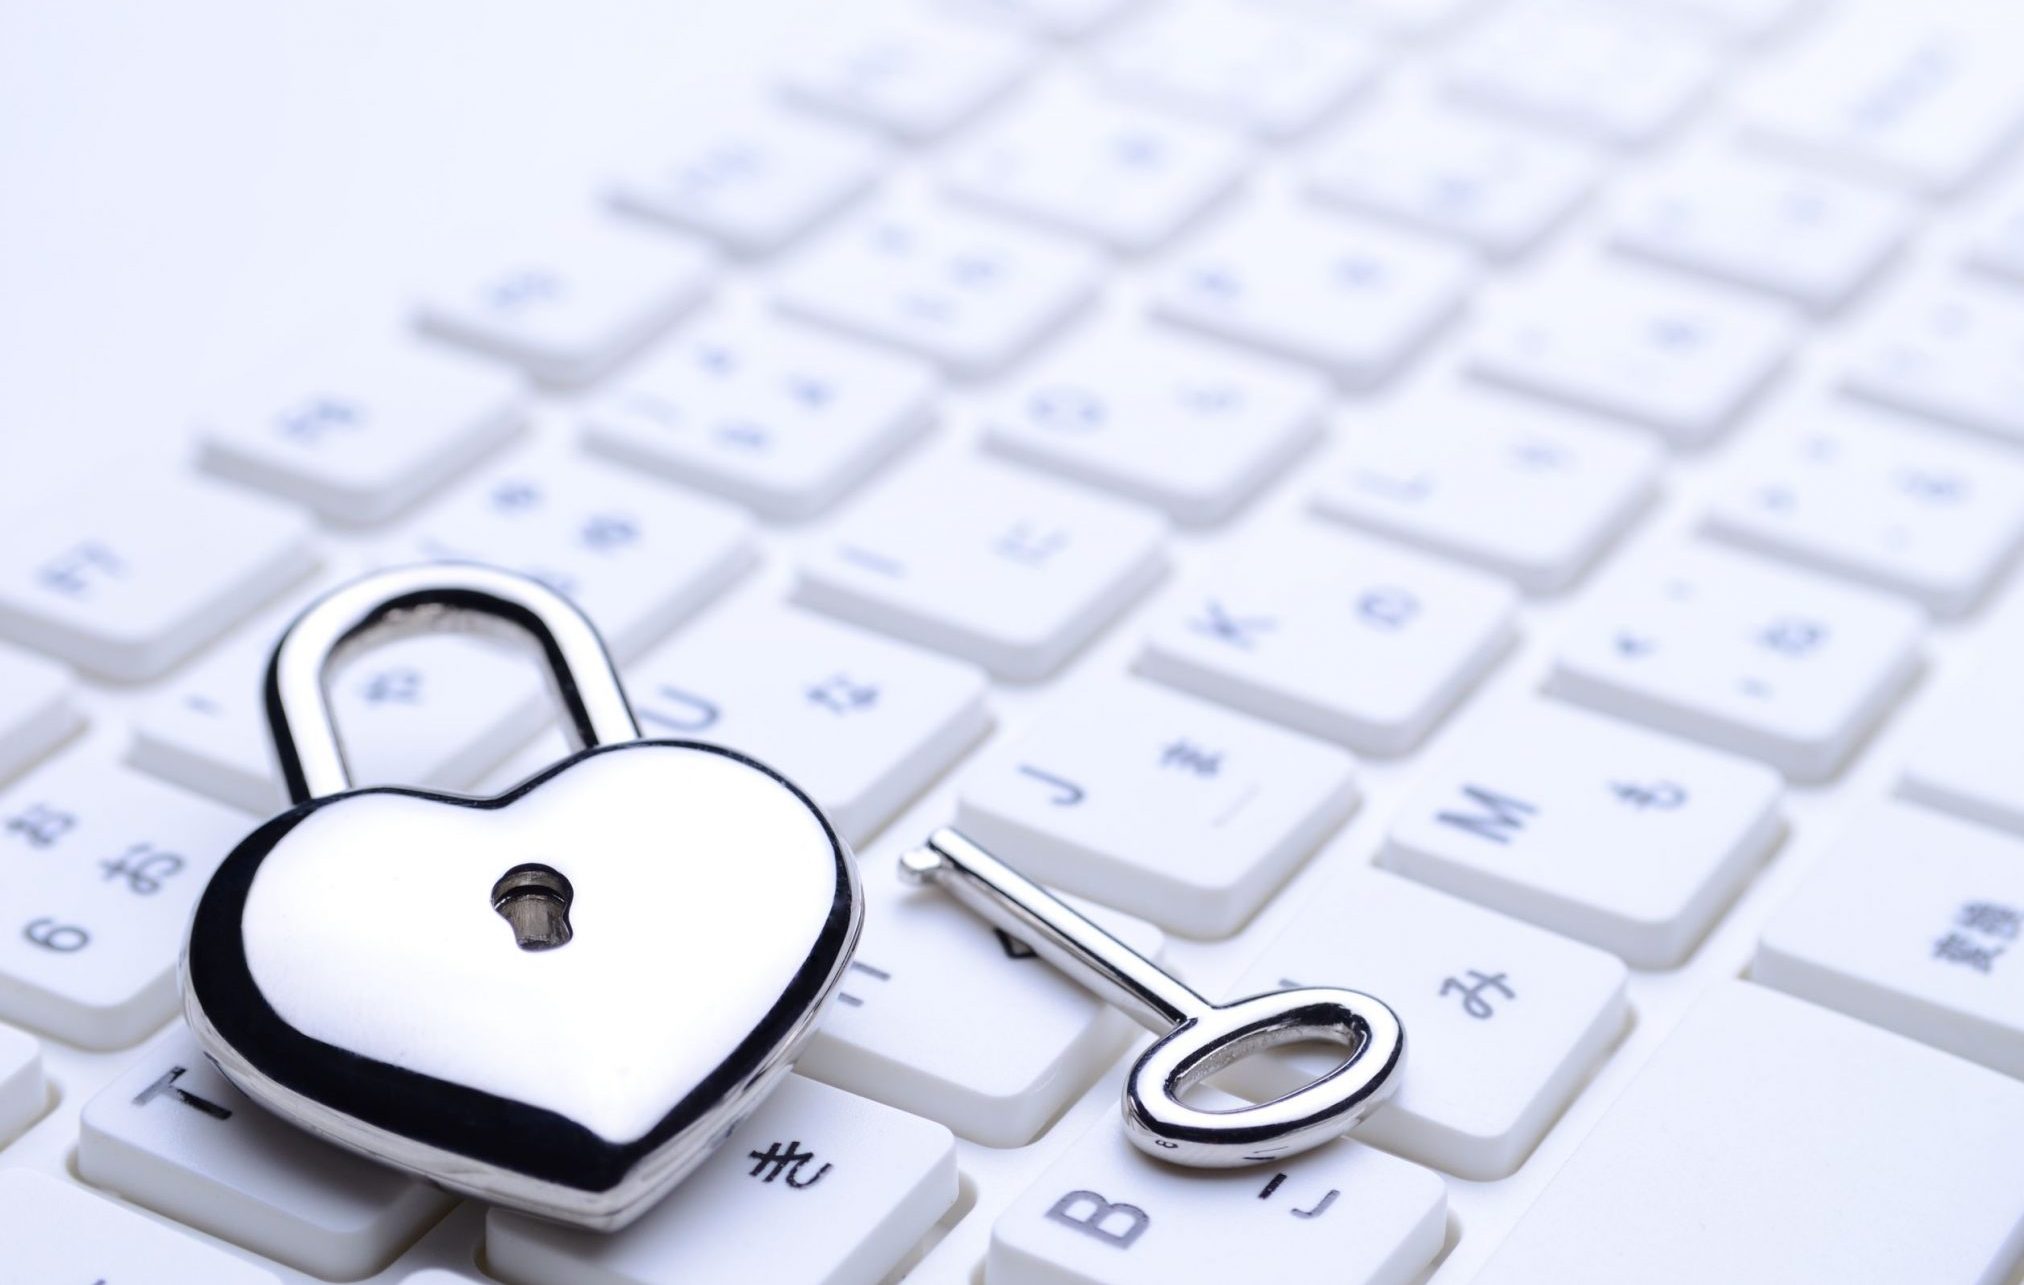 heart lock keyboard online dating scam digital technology